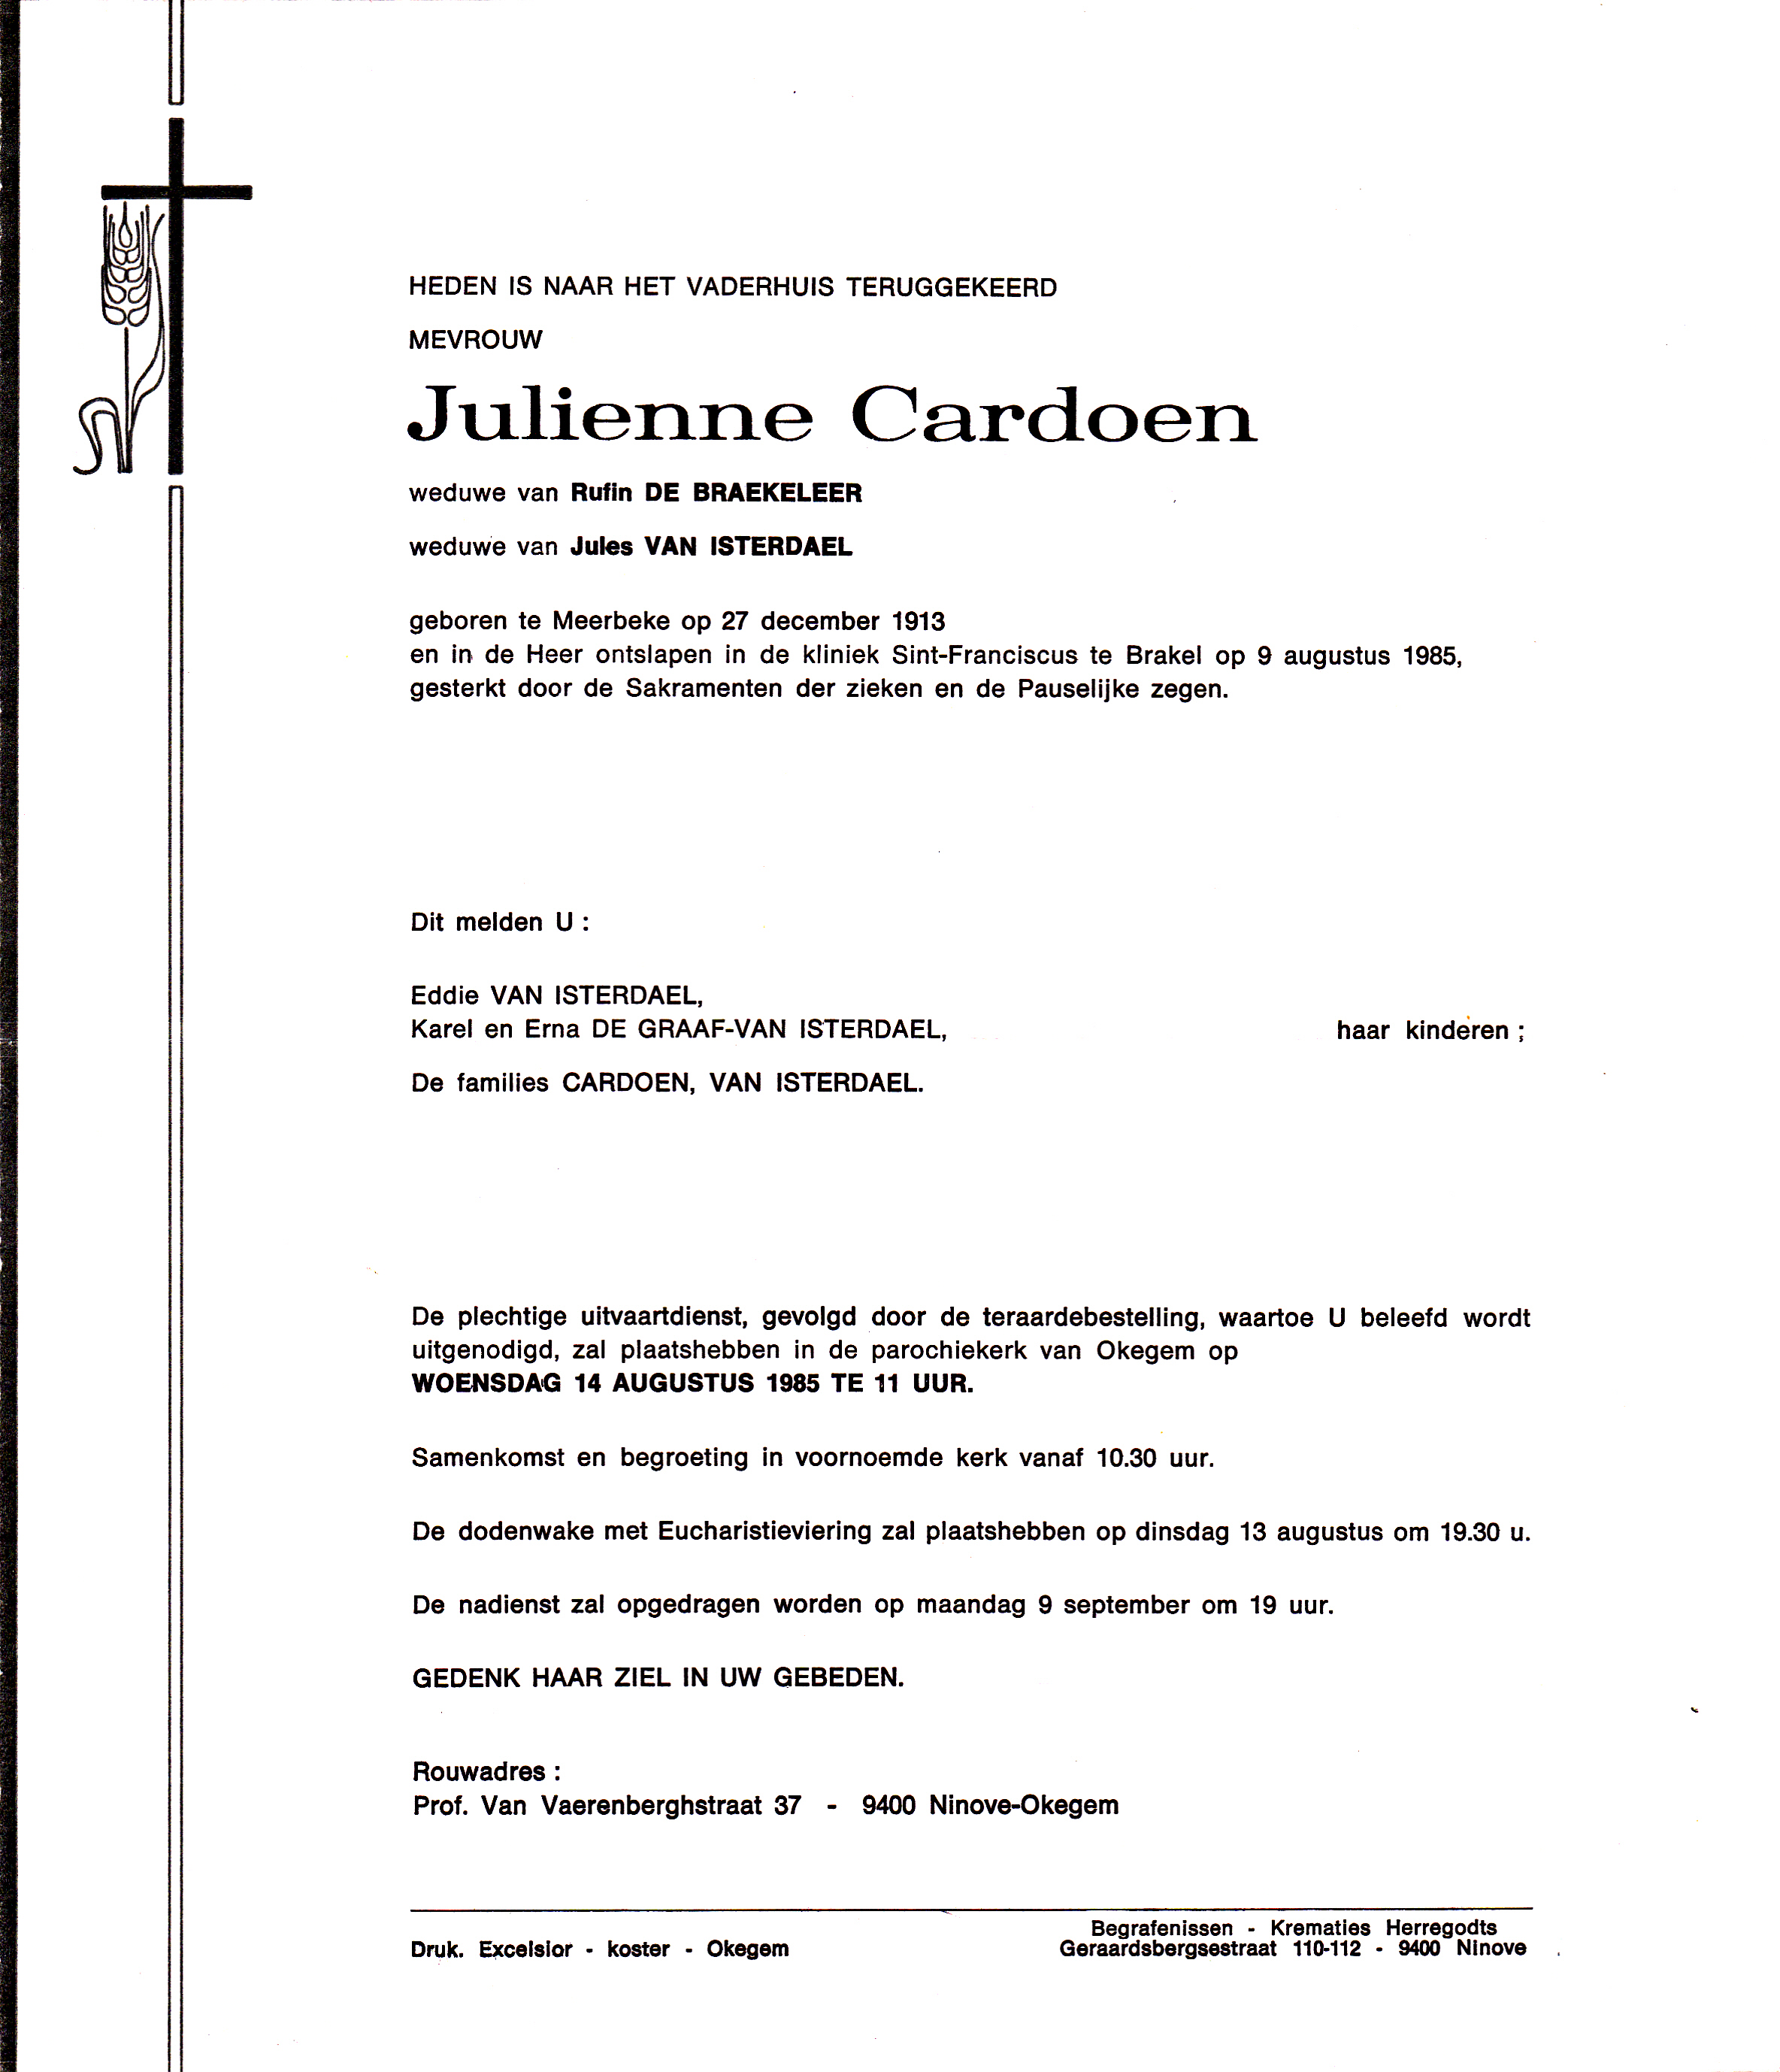 Cardoen Julienne